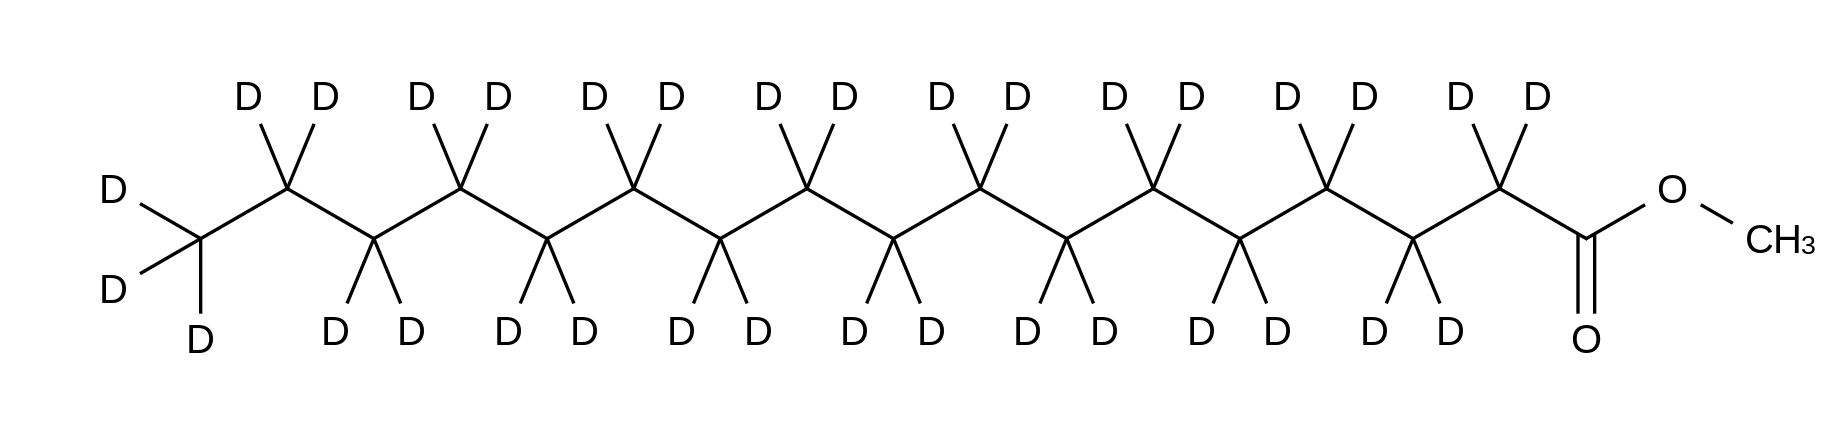 Methyl Margarate-d<sub>33</sub>